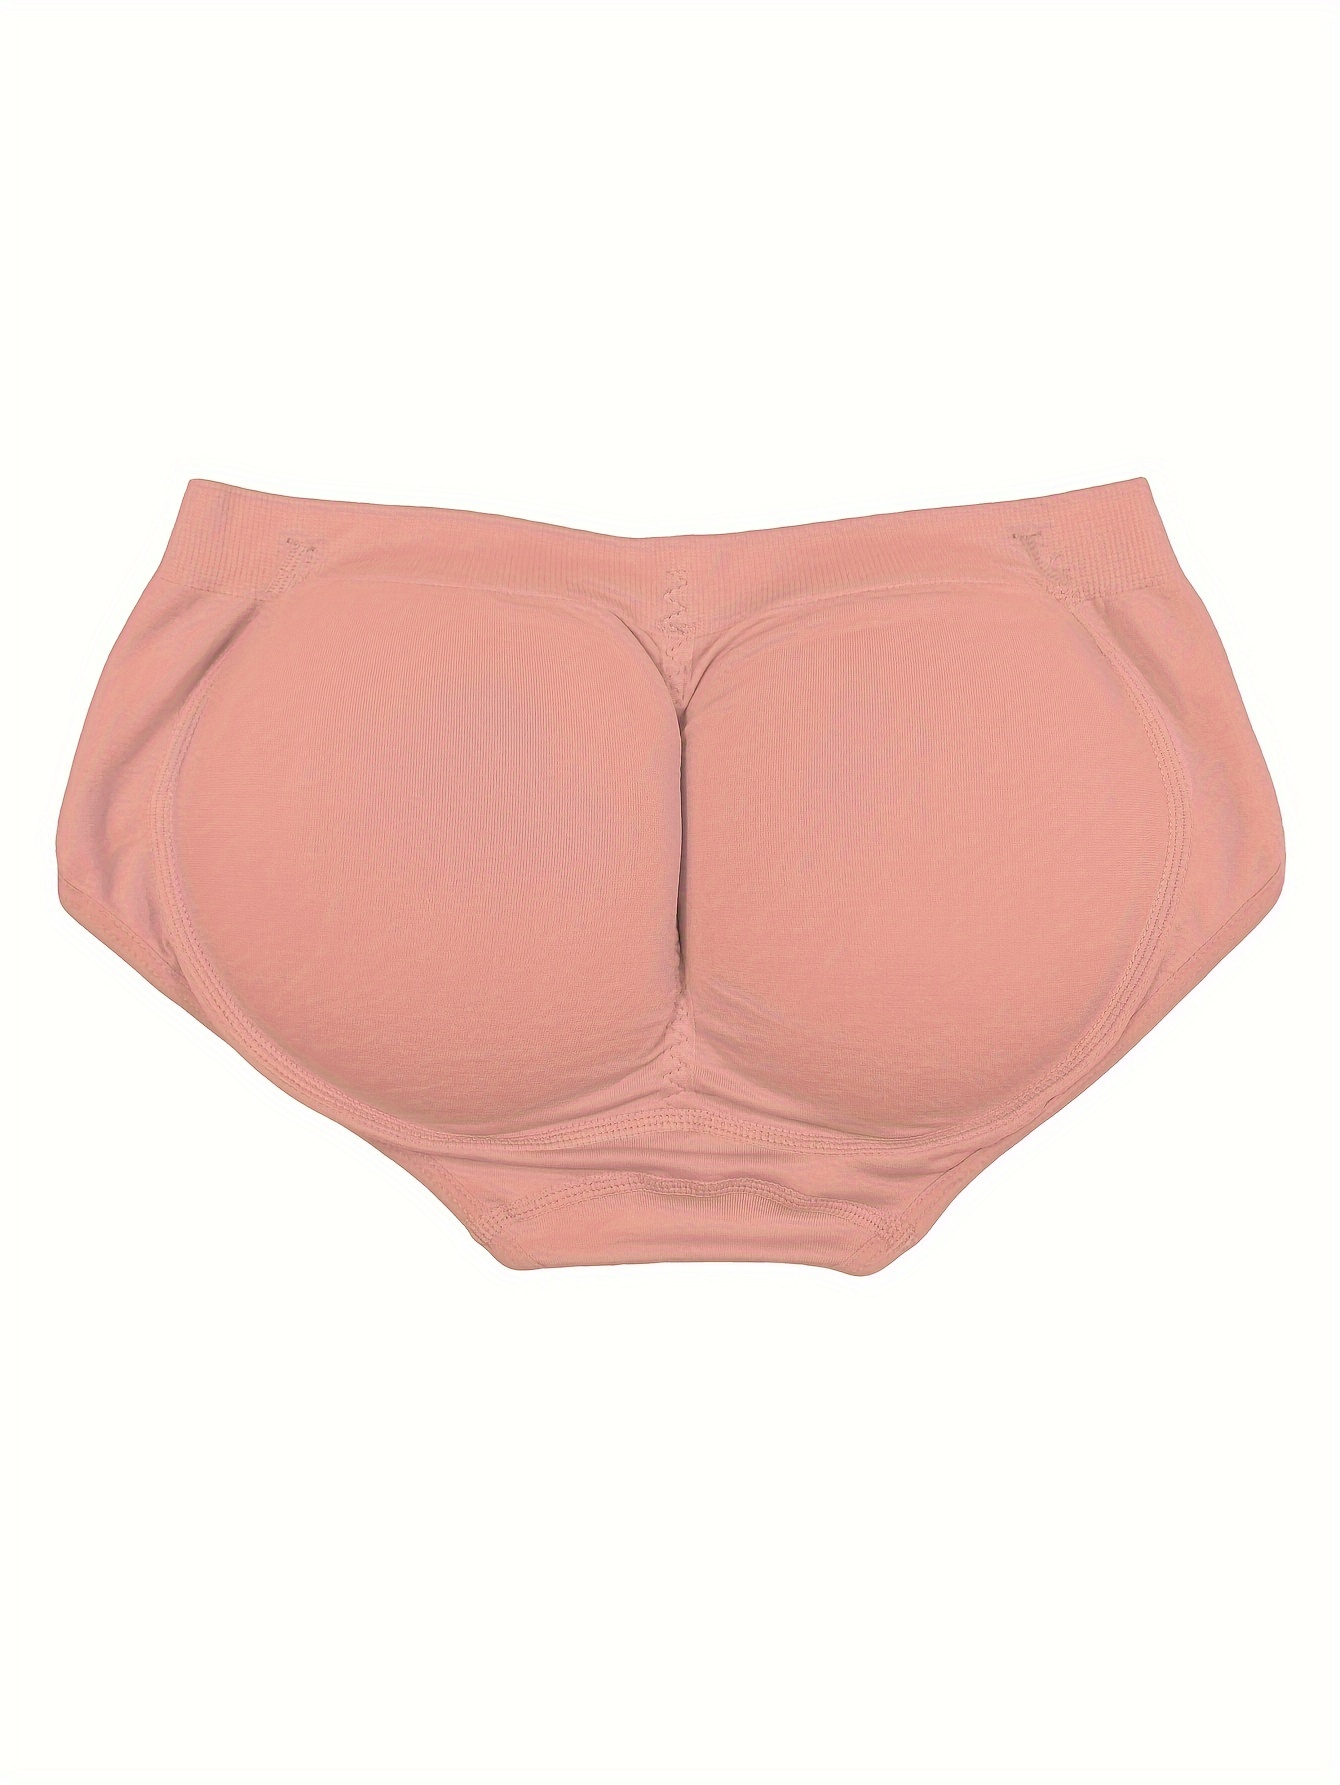 Women's Butt Lifter Panties Light Stretchy Undershaper Seamless